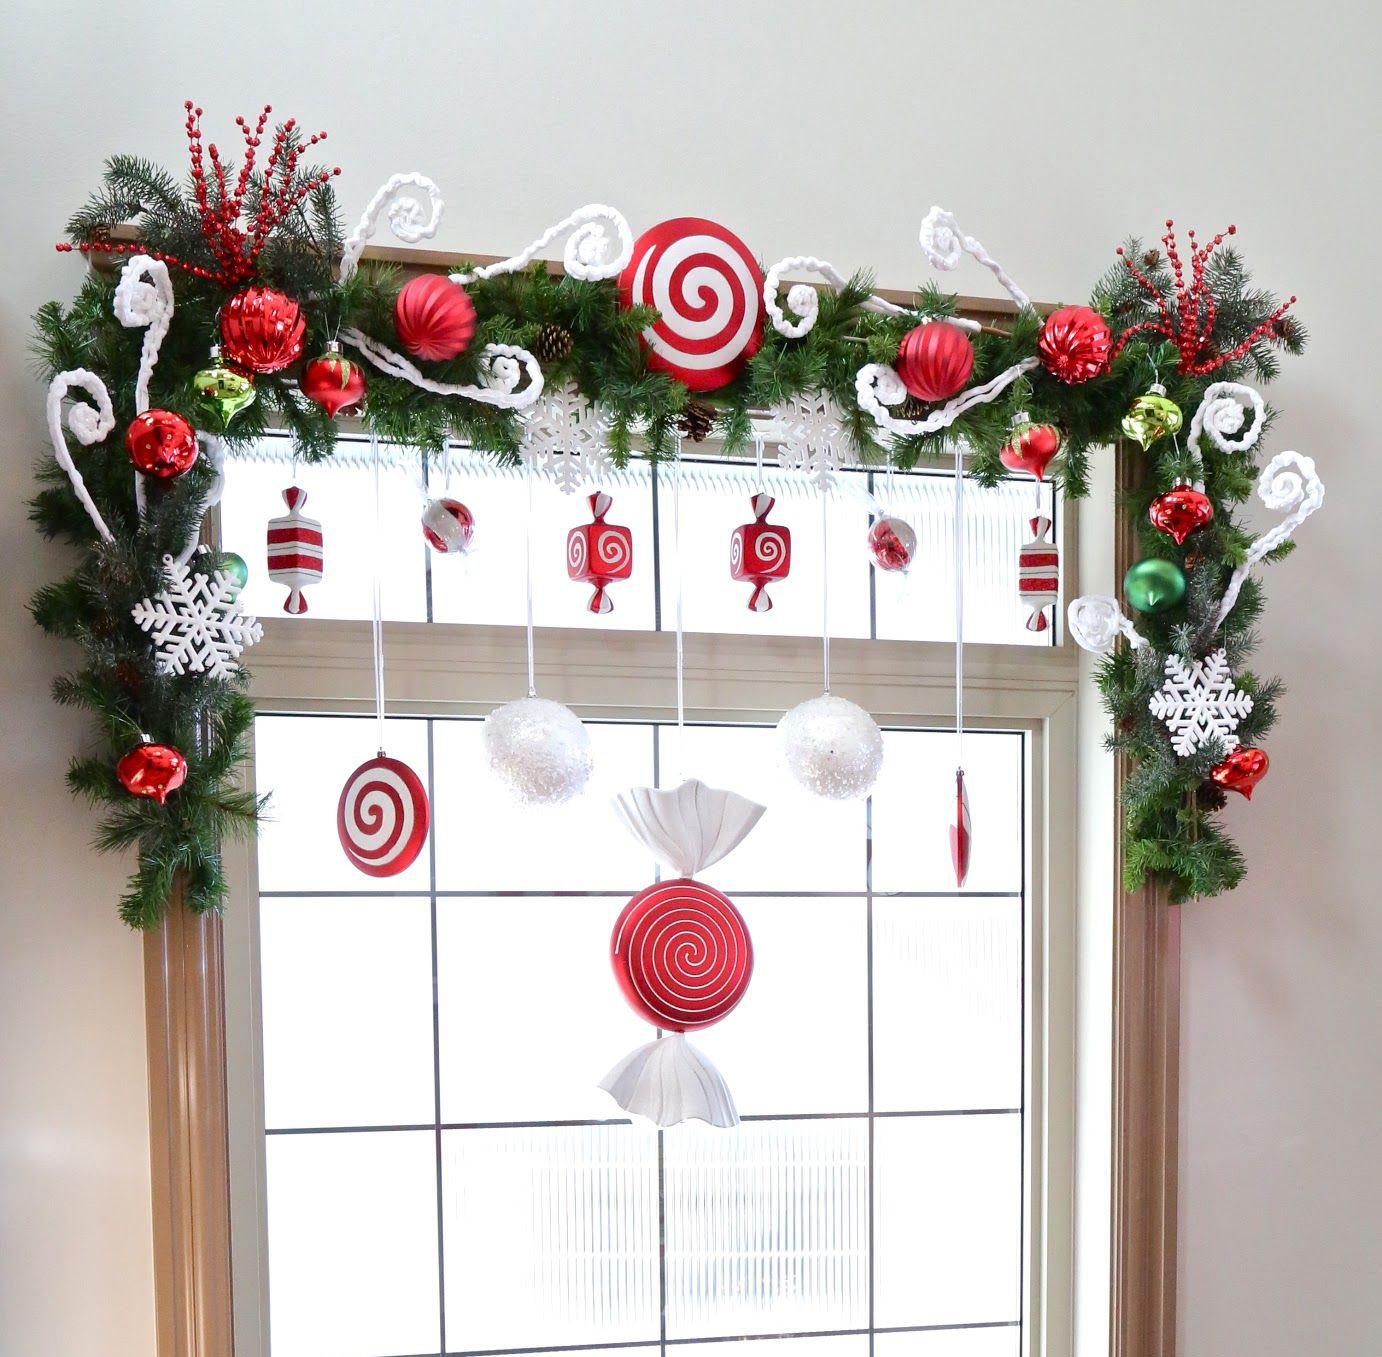 Trang trí khung cửa sổ Giáng sinh độc đáo, đẹp mắt cùng bé yêu của bạn